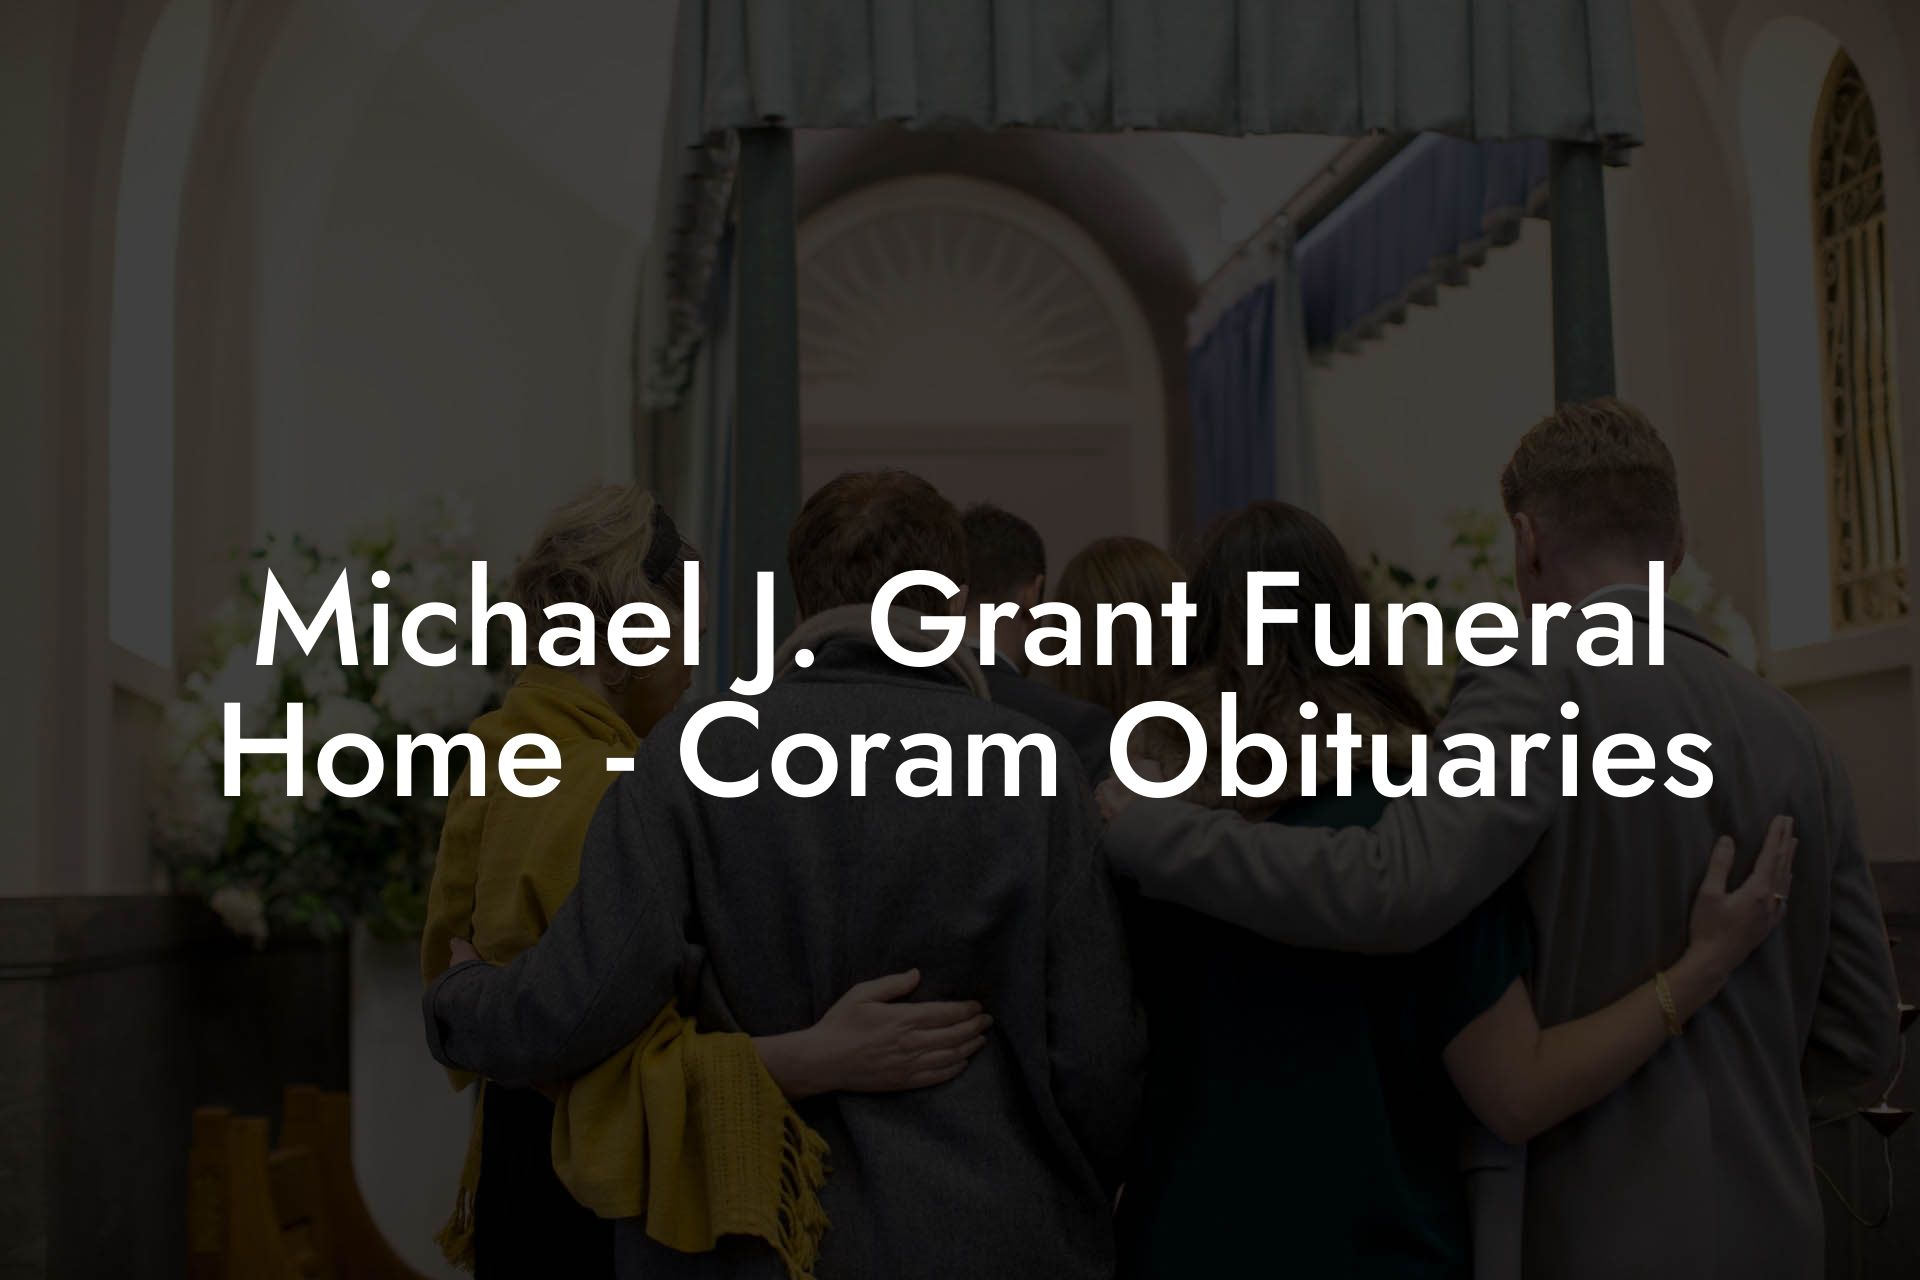 Michael J. Grant Funeral Home - Coram Obituaries